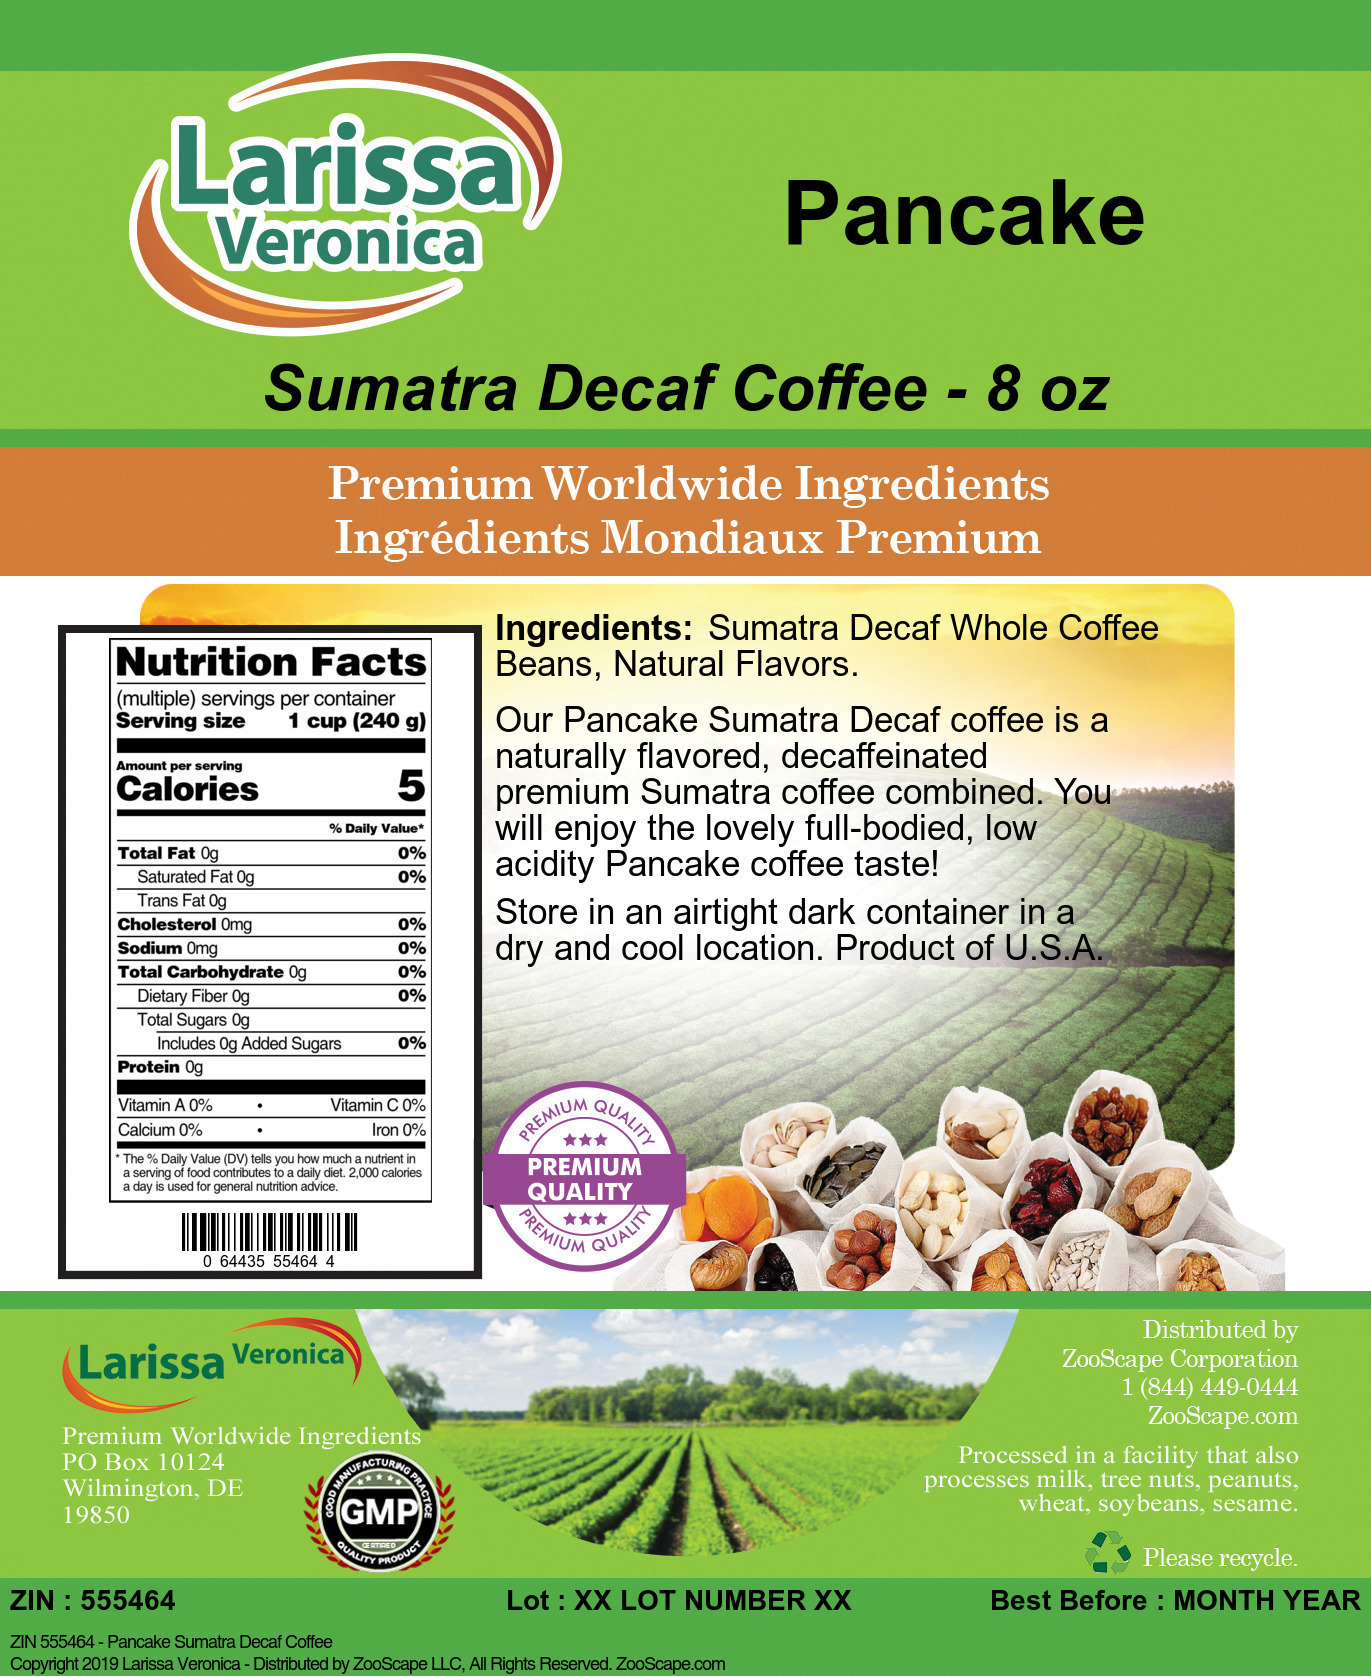 Pancake Sumatra Decaf Coffee - Label